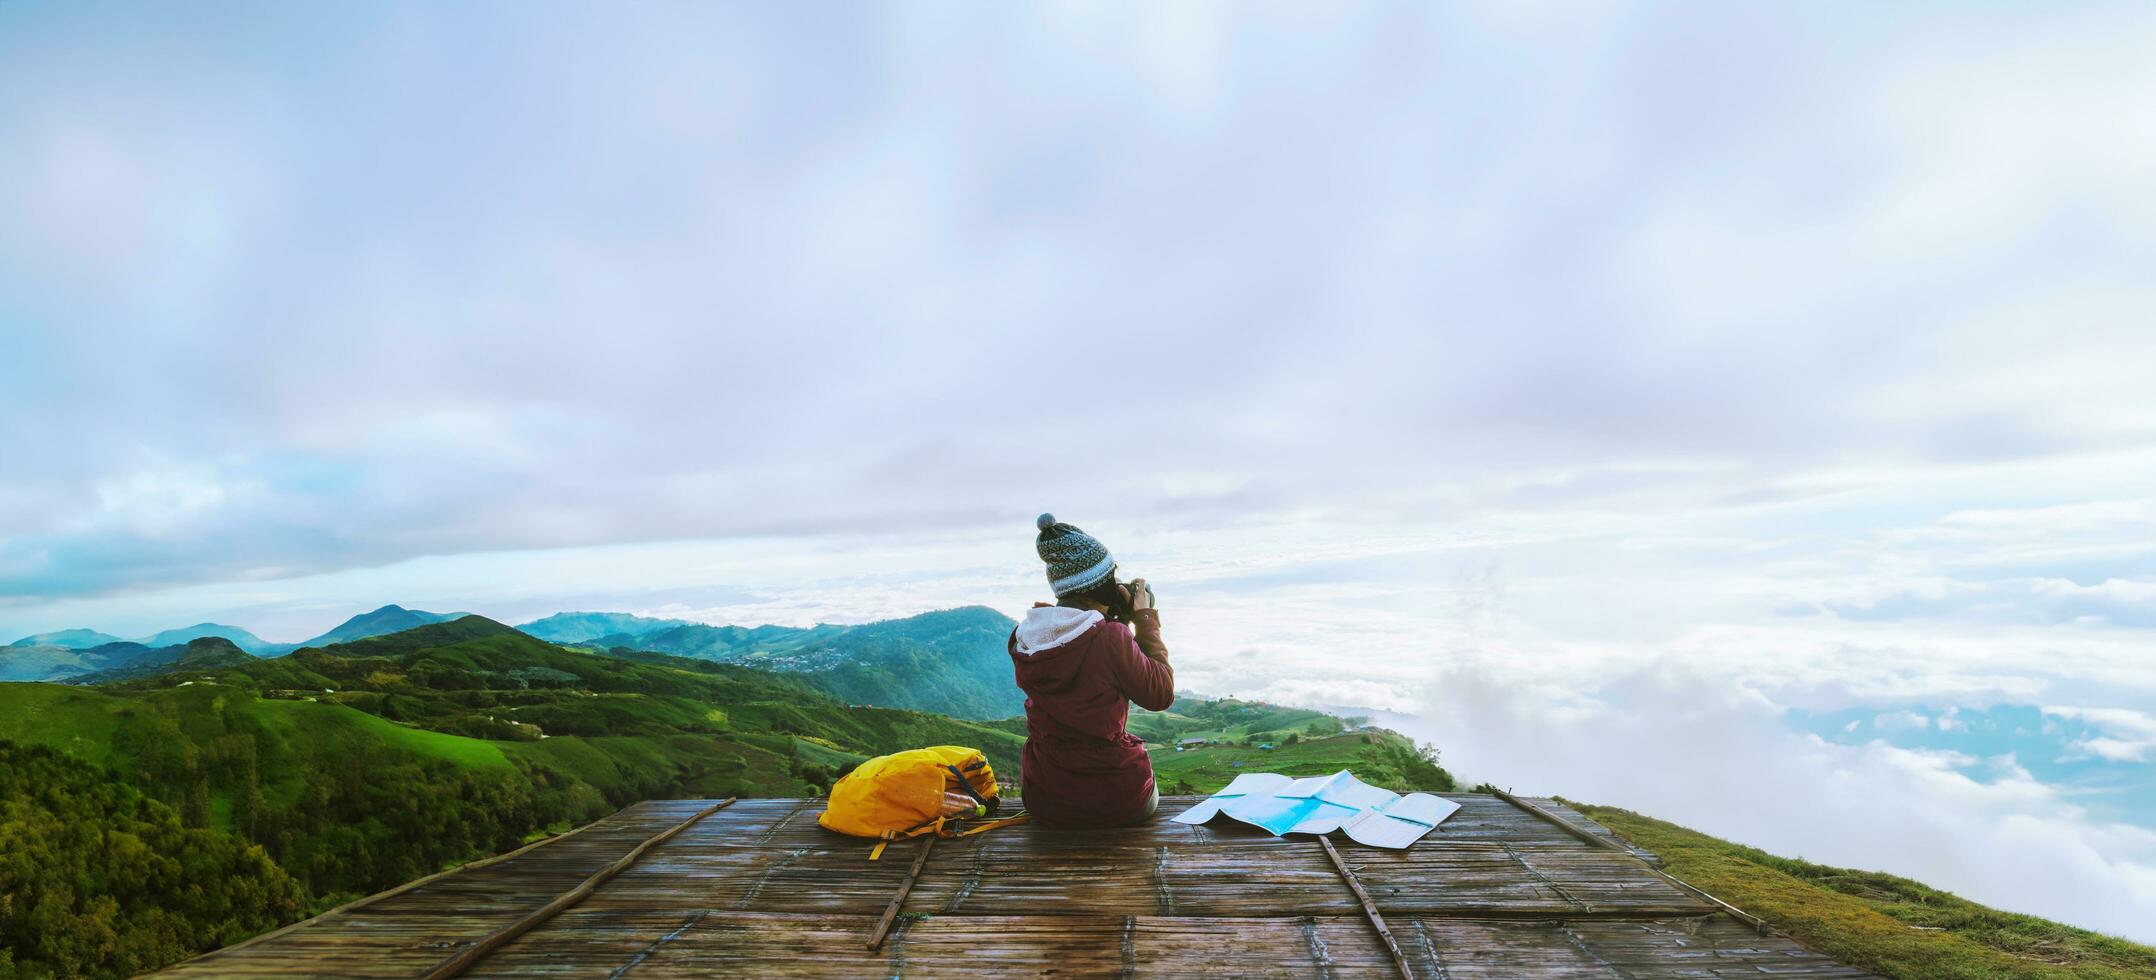 les femmes asiatiques voyagent se détendent pendant les vacances. photographier le paysage sur la montagne.thailande photo